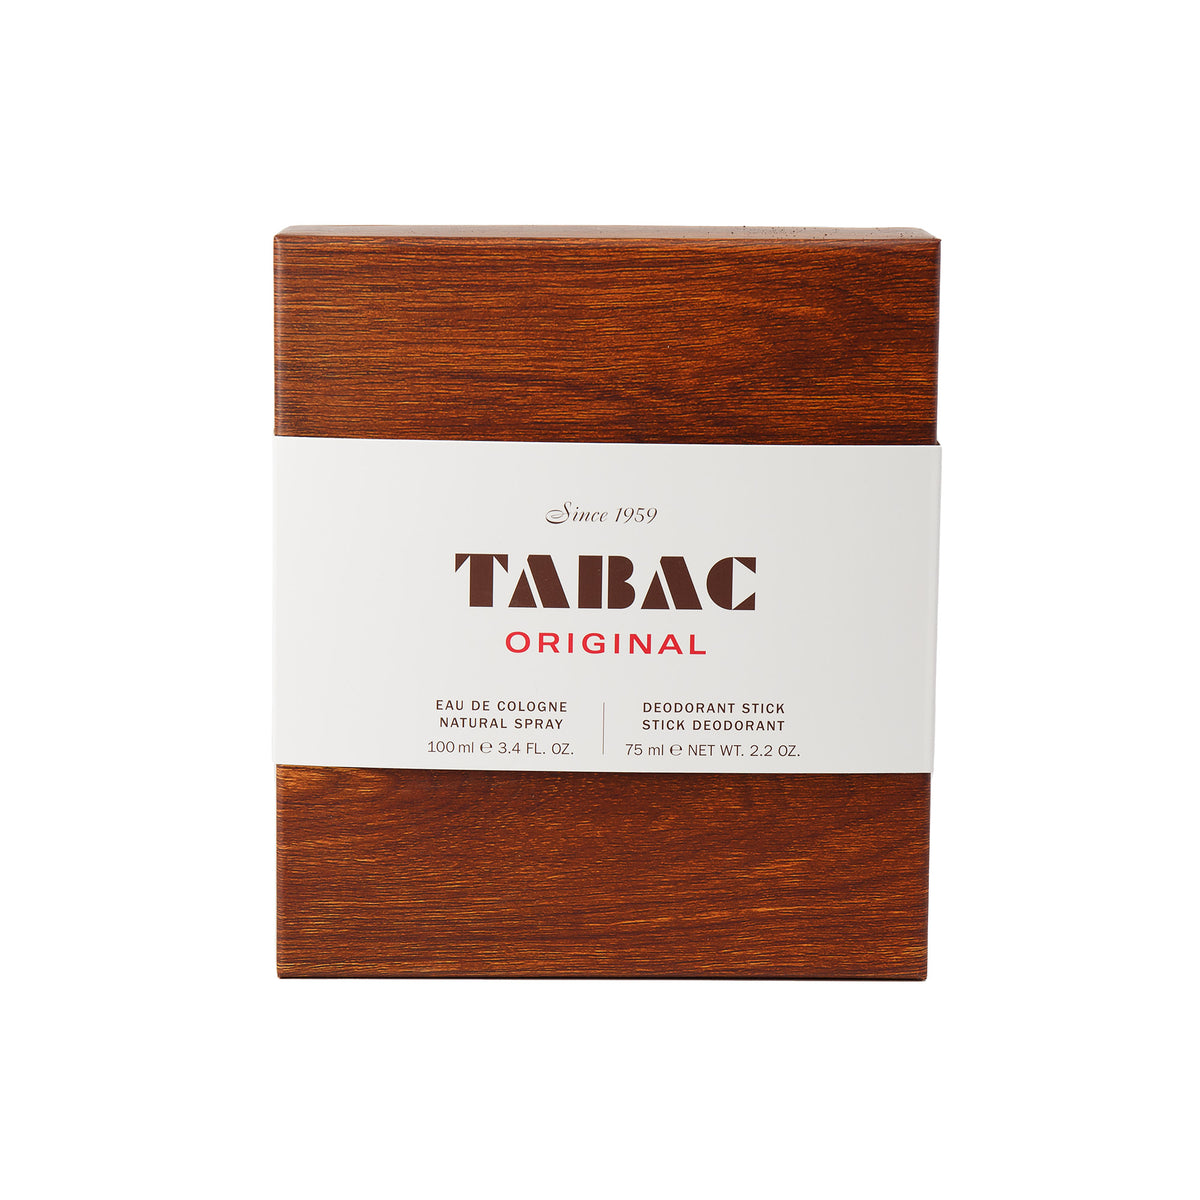 Tabac Original Eau De Cologne and Deodorant Set #10084469